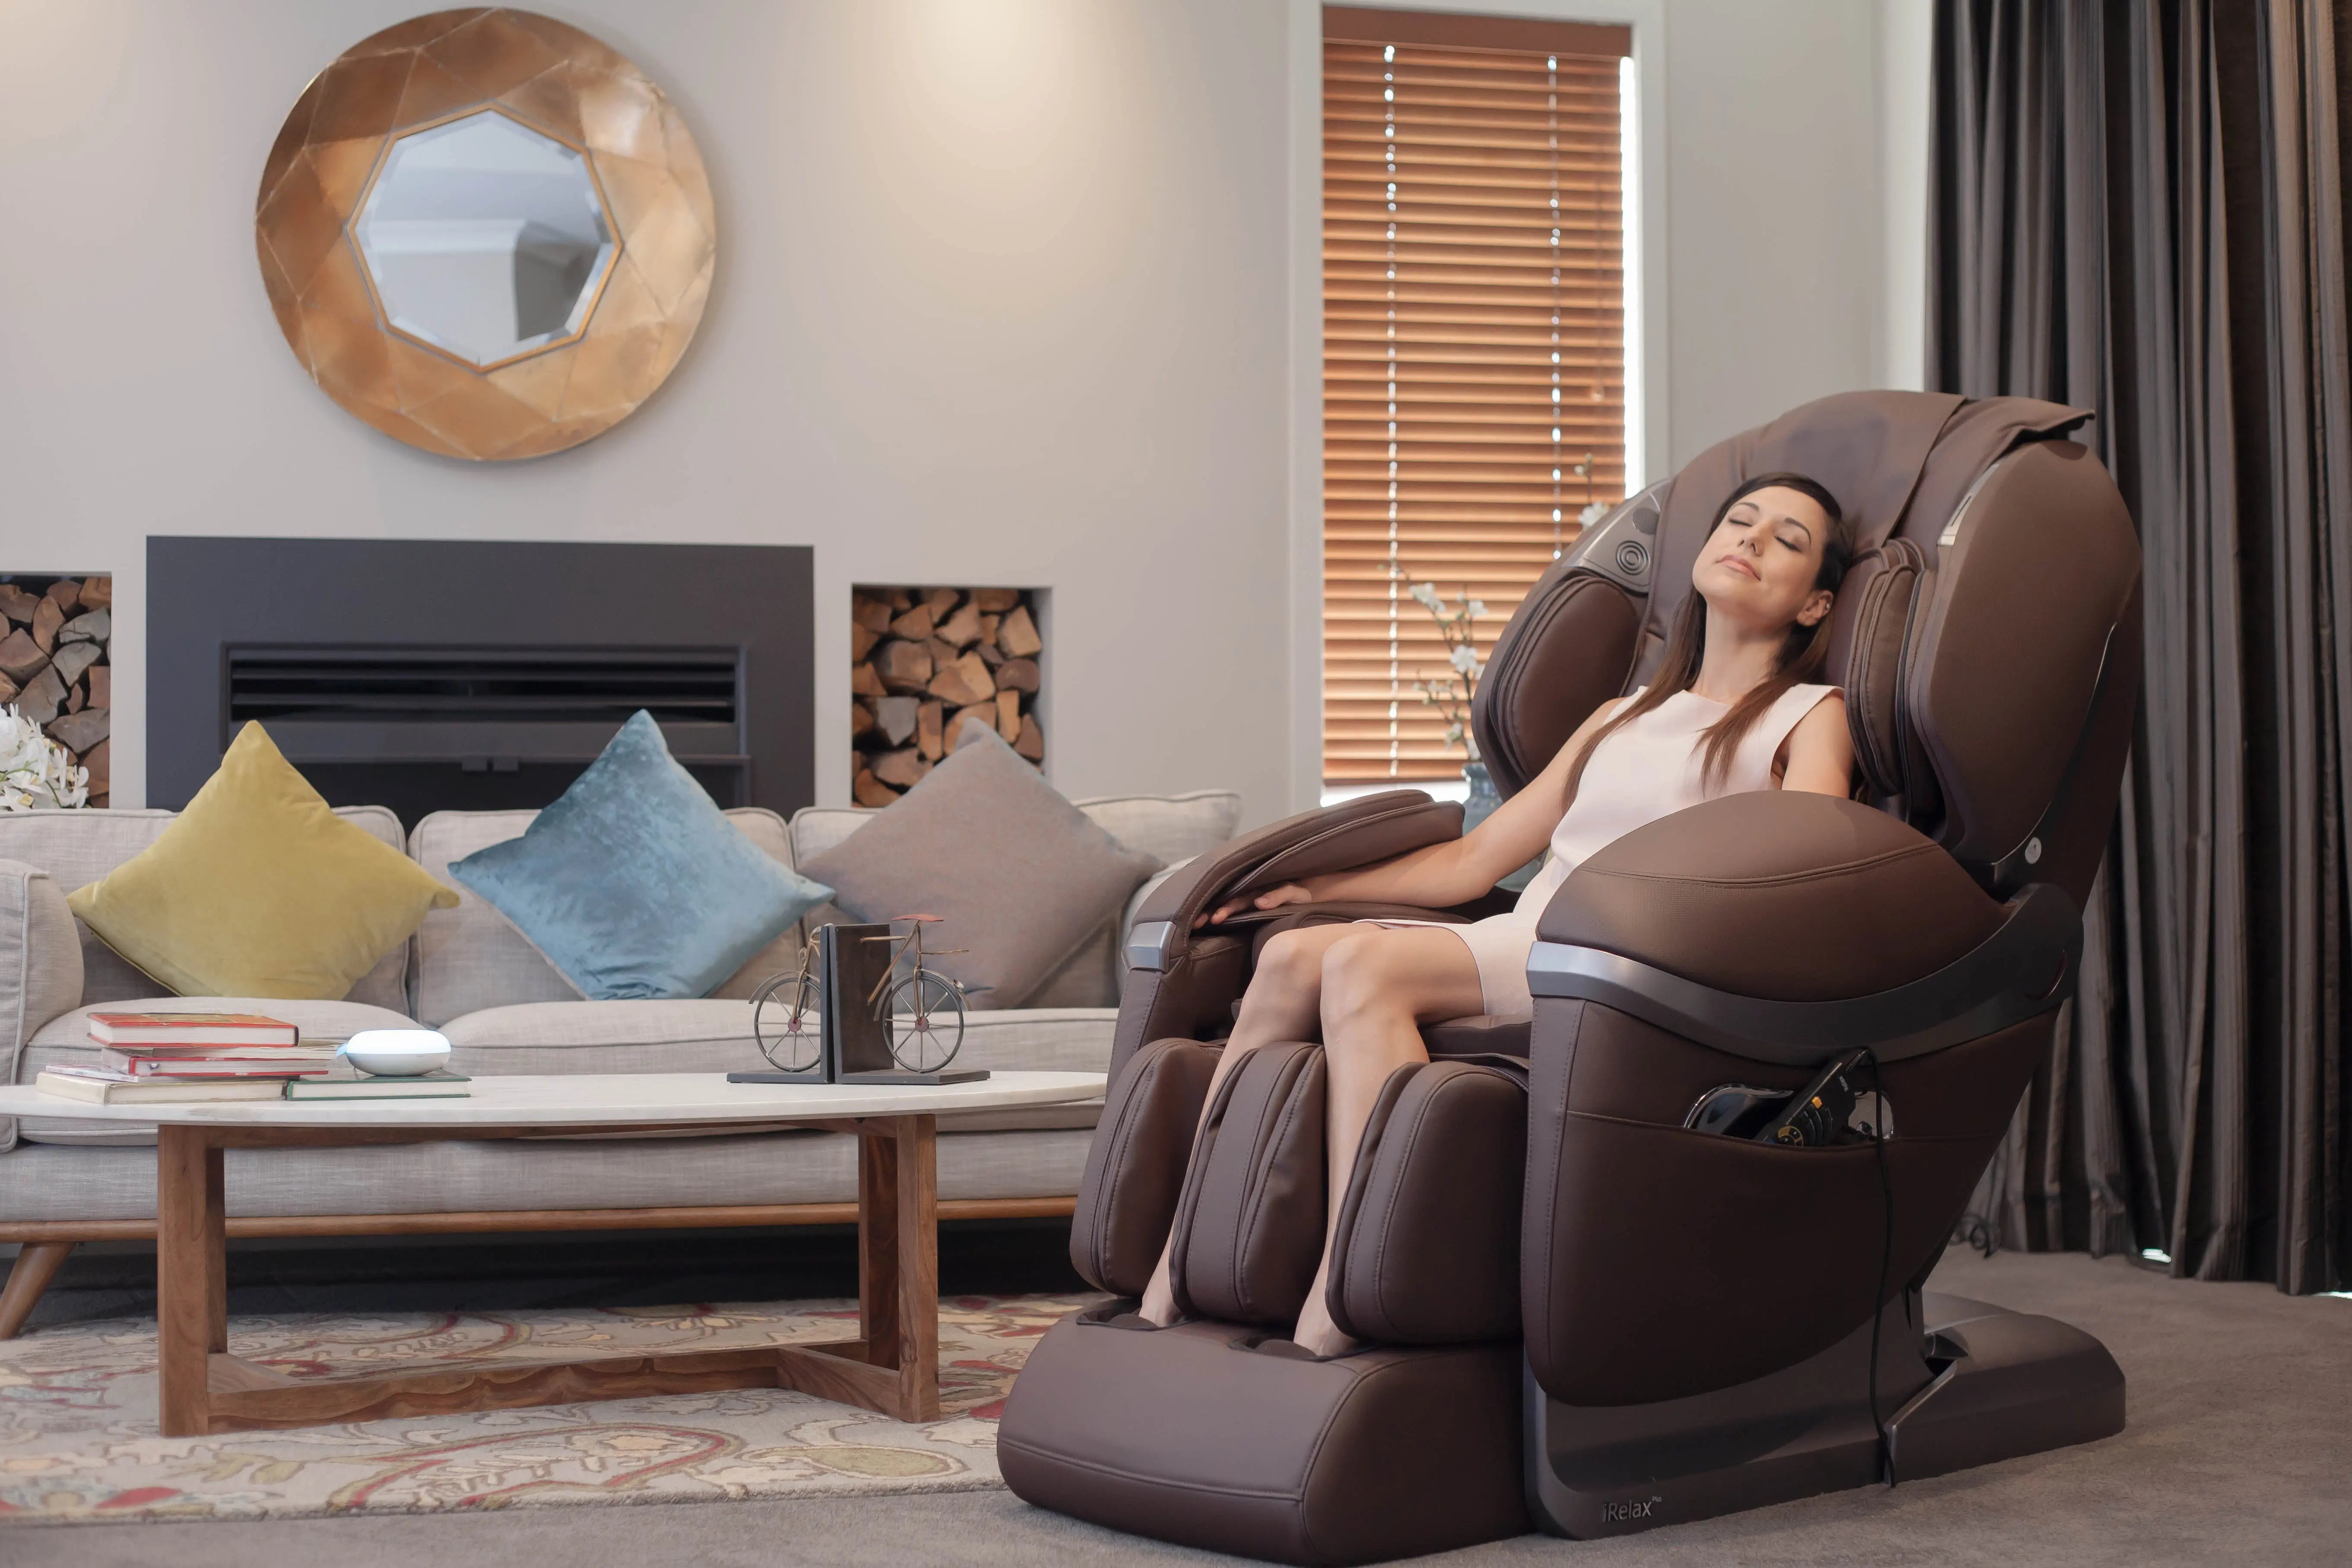 iRelax iClass 3D Massage Chair